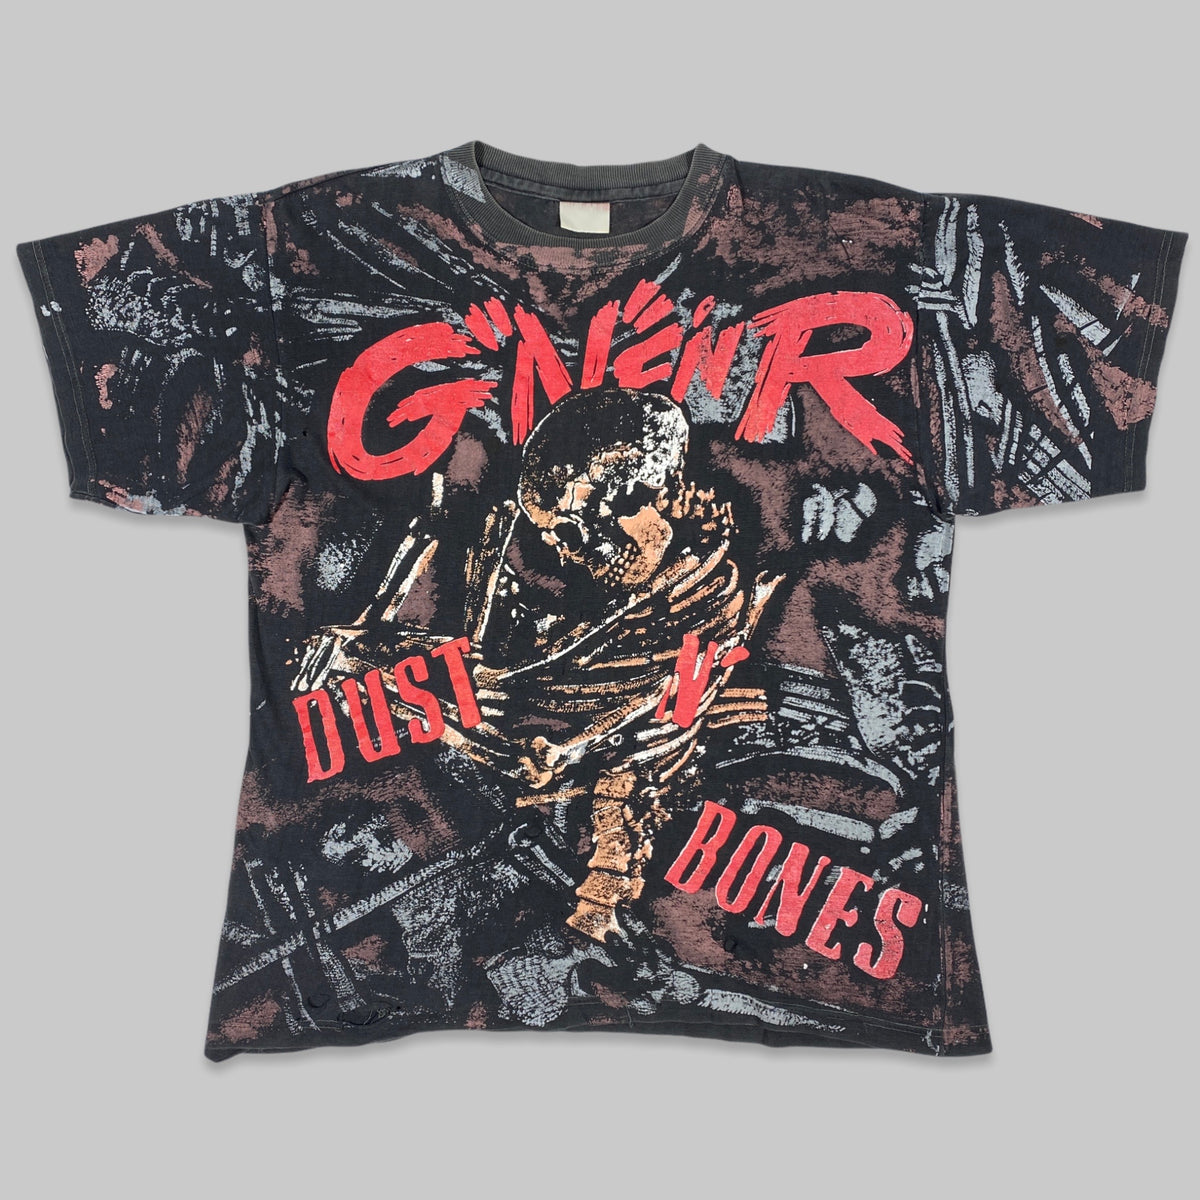 半額 GUNS N' ROSES DUST AND BONES 1992 Tシャツ L dynamic-it.ro